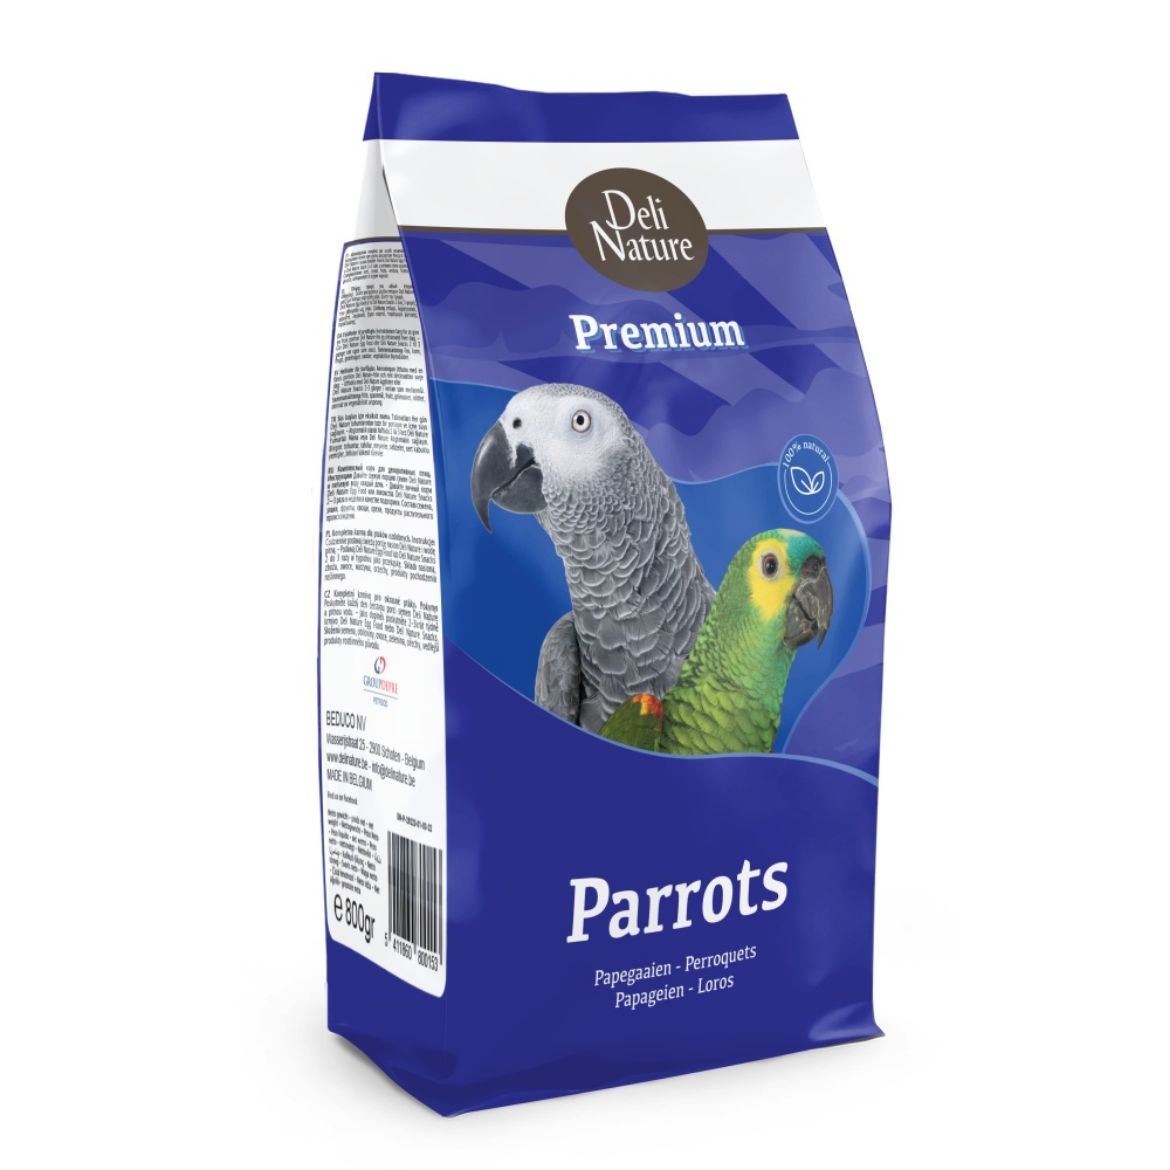 Obrázek z Deli Nature Premium PARROTS velký papoušek 800 g 